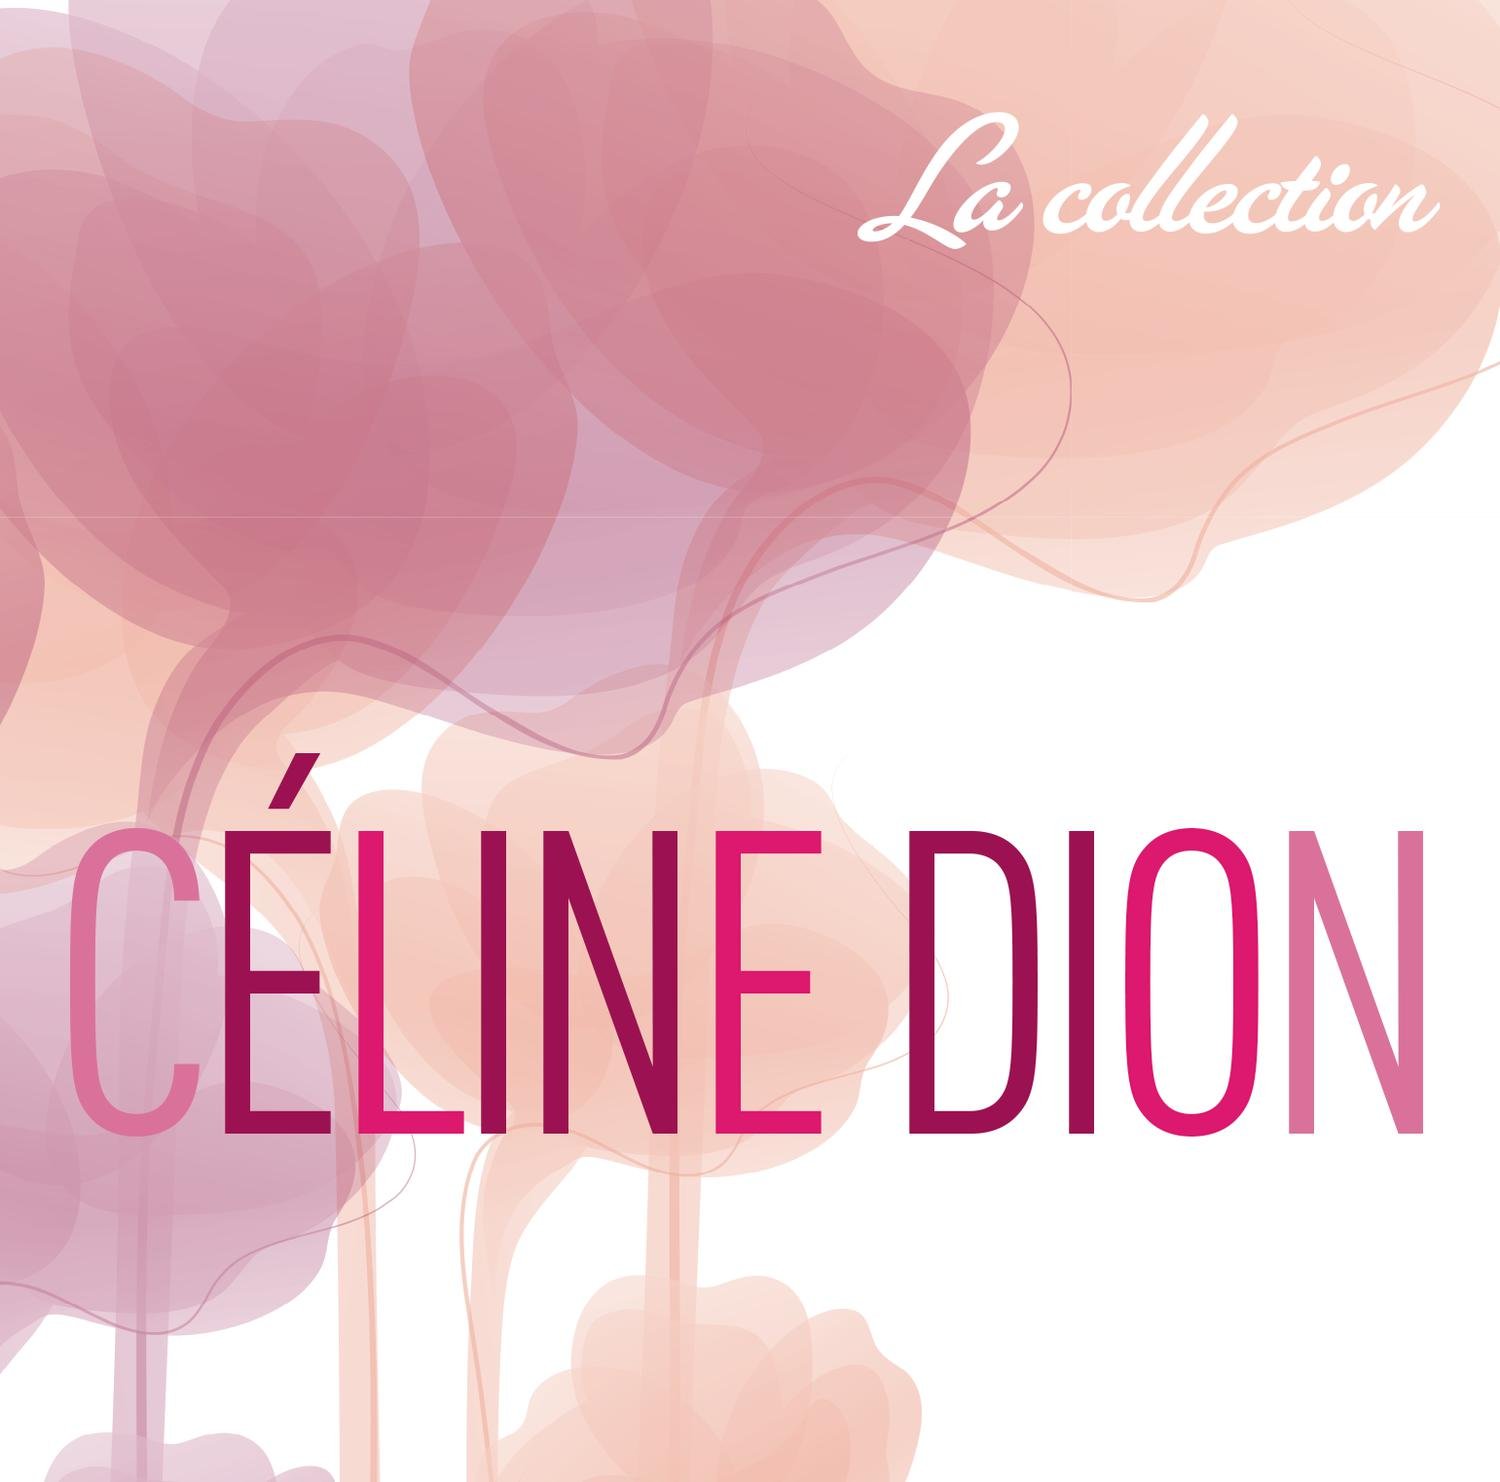 Audio Cd Celine Dion - La Collection (5 Cd+Dvd) NUOVO SIGILLATO, EDIZIONE DEL 18/11/2013 SUBITO DISPONIBILE